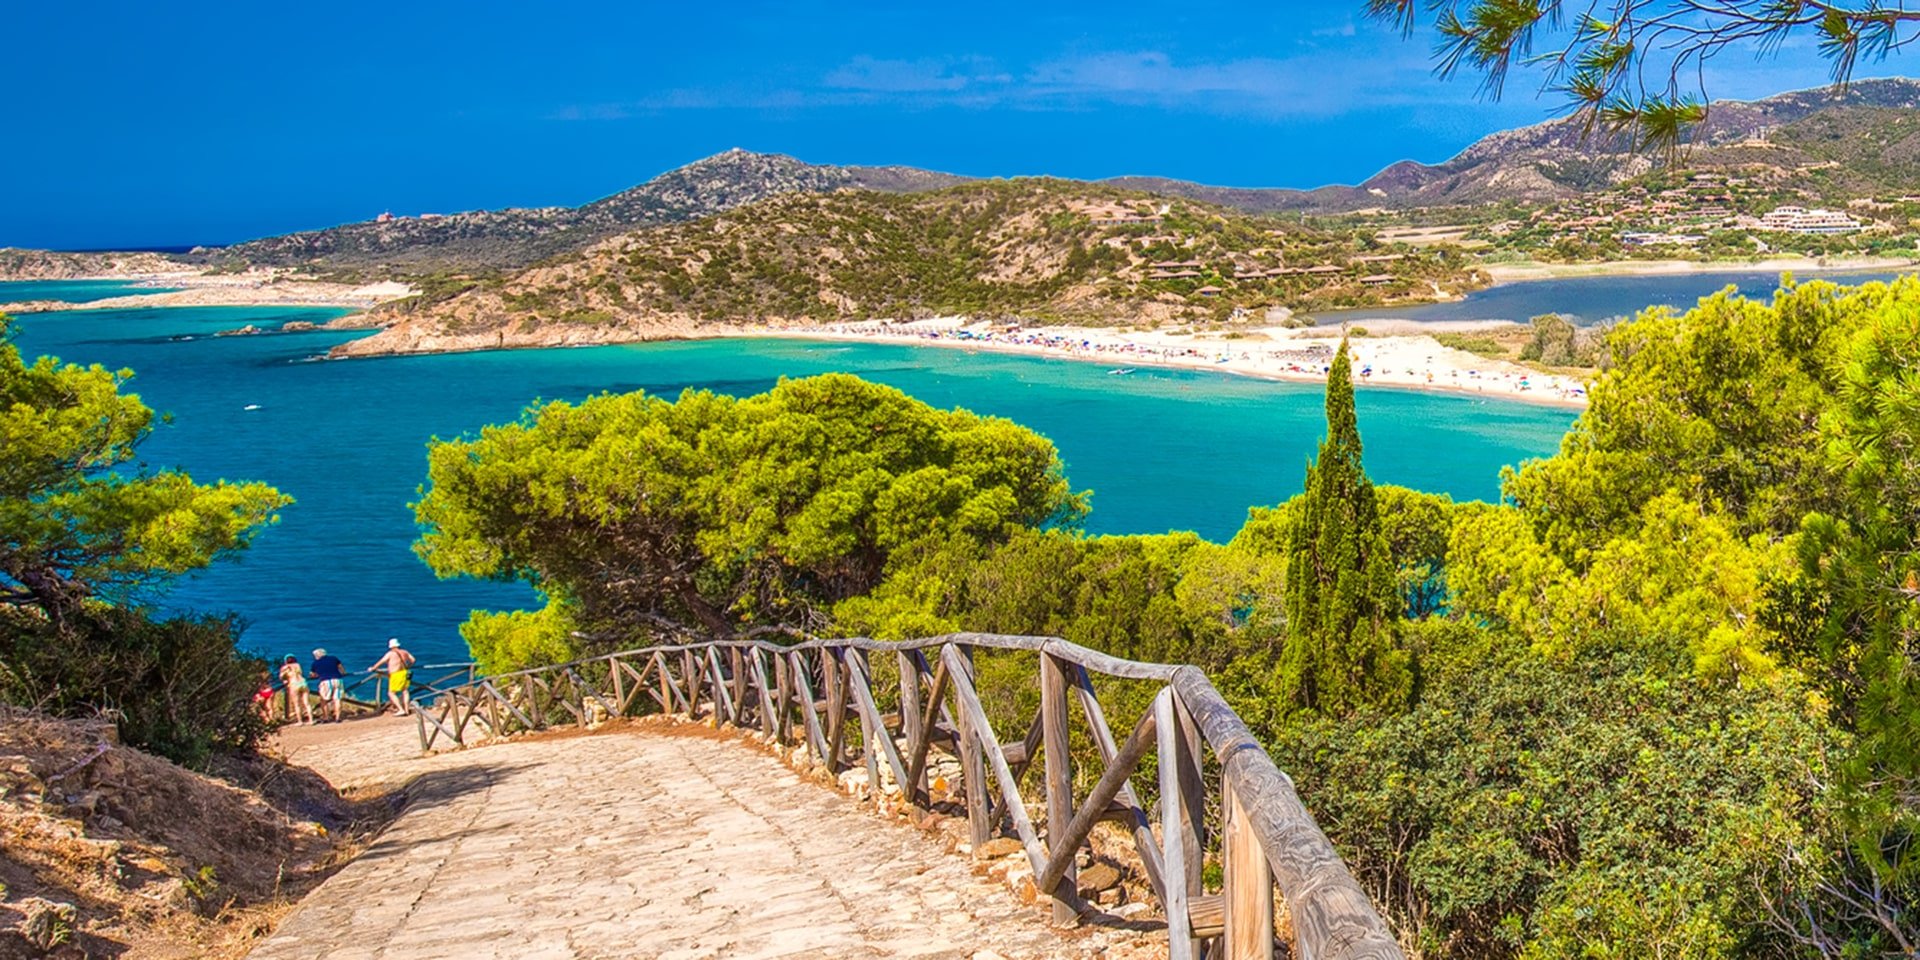 Sa Colonia beach, Chia resort, Sardinia, rejser til Italien